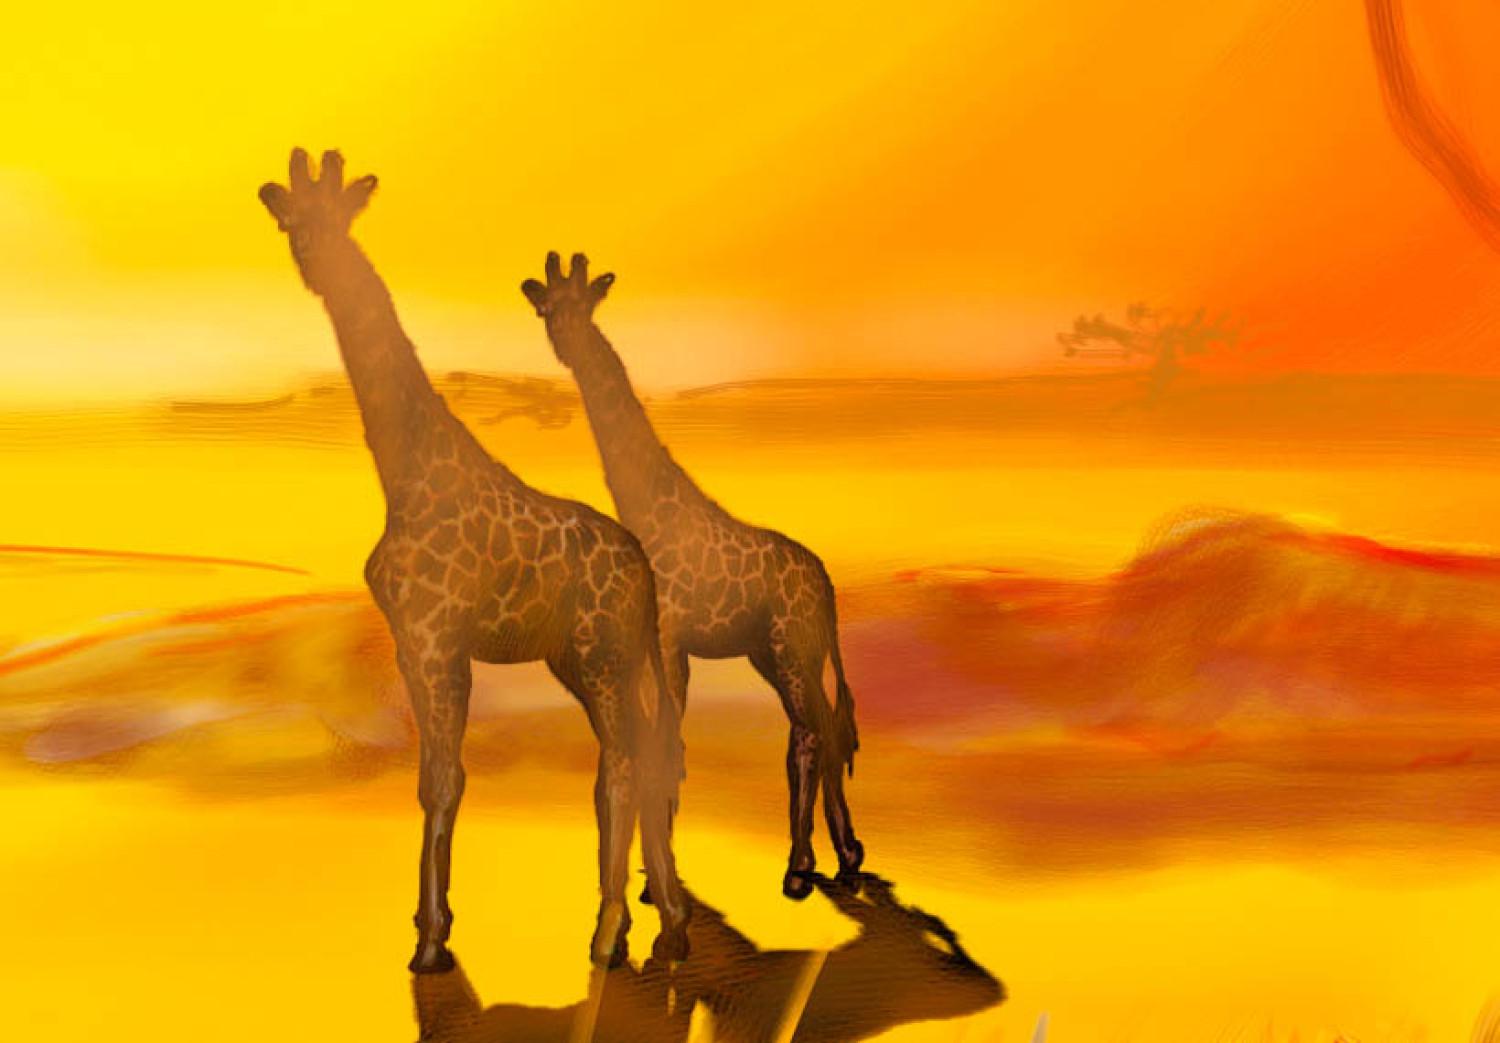 Cuadro decorativo Sunny Africa - el paisaje africano bañado en las rayas del sol